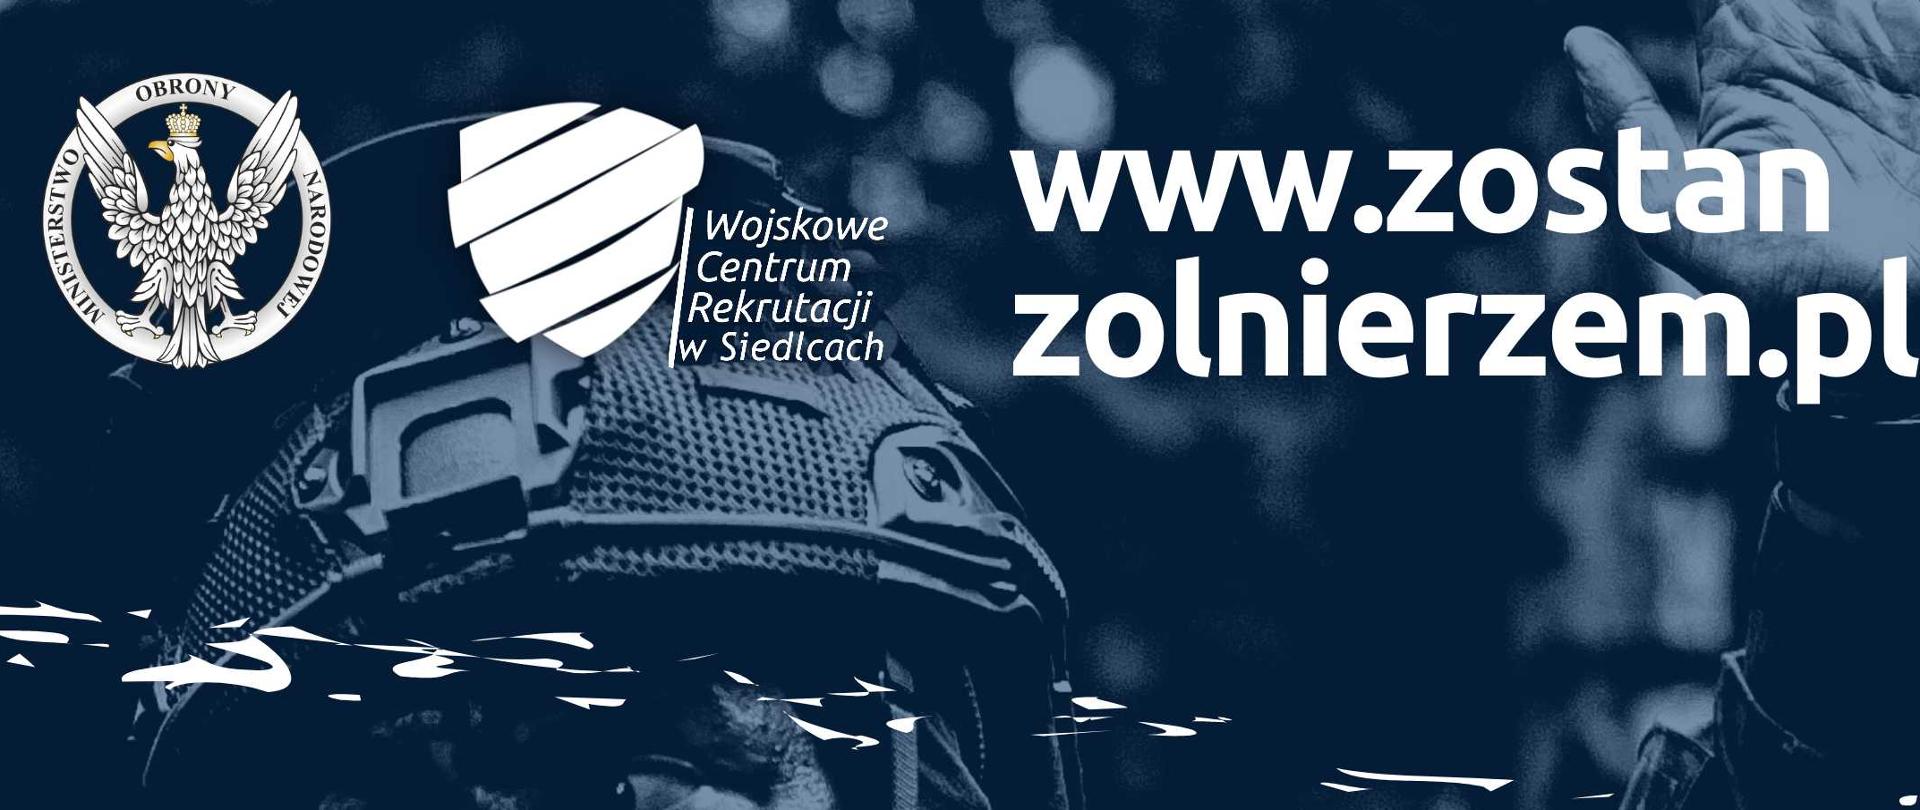 www.zostanzolnierzem.pl
Wstąp do dowolnej zasadniczej służby wojskowej.
Mobilny punkt rekrutacyjny 21.05.2022 od godziny 11.00
Siedlce - zalew na Muchawką plaża miejska